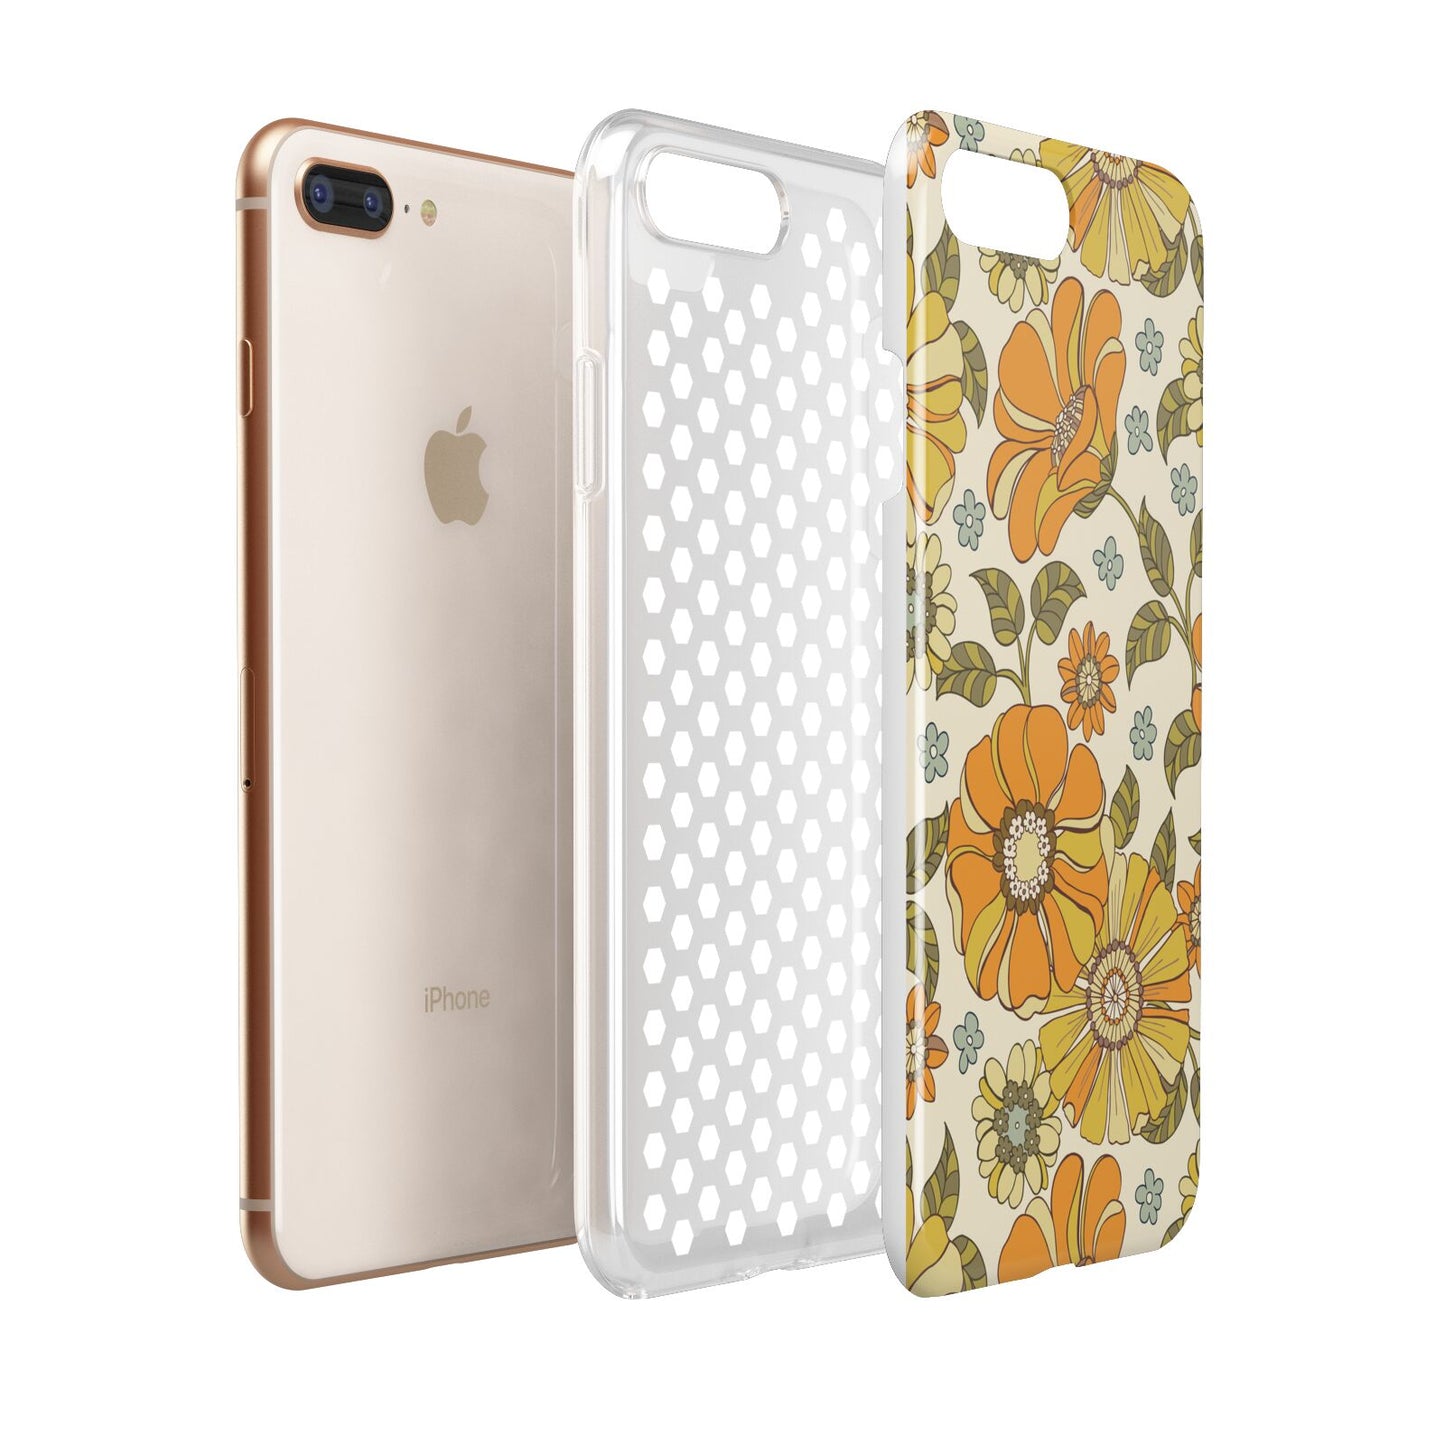 Vintage Floral Apple iPhone 7 8 Plus 3D Tough Case Expanded View